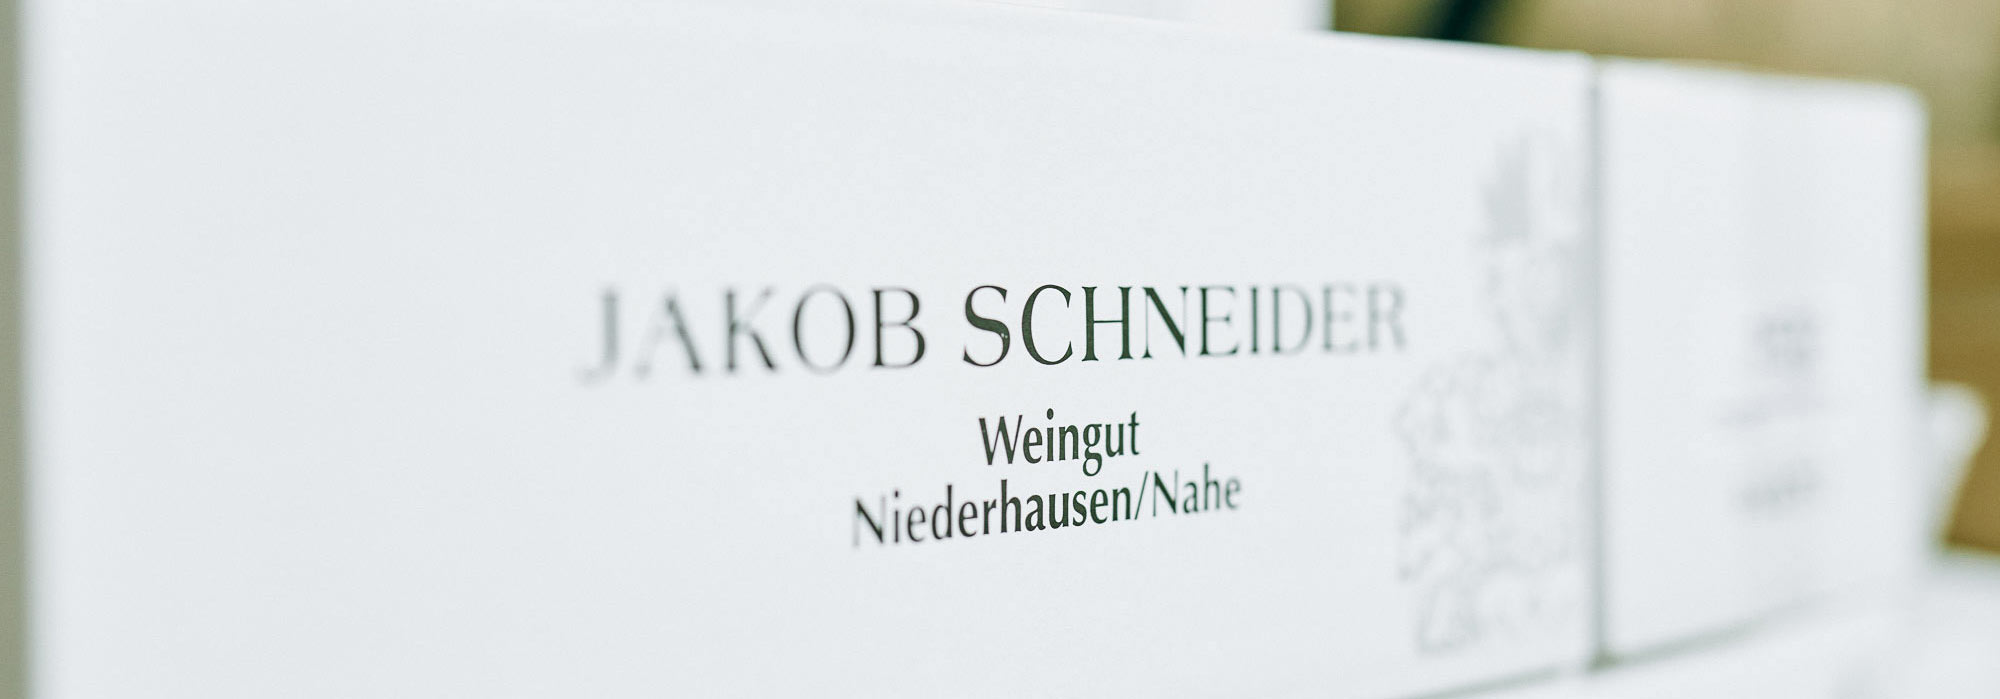 Weingut Jakob Schneider, Winzerstraße 15, 55585 Niederhausen